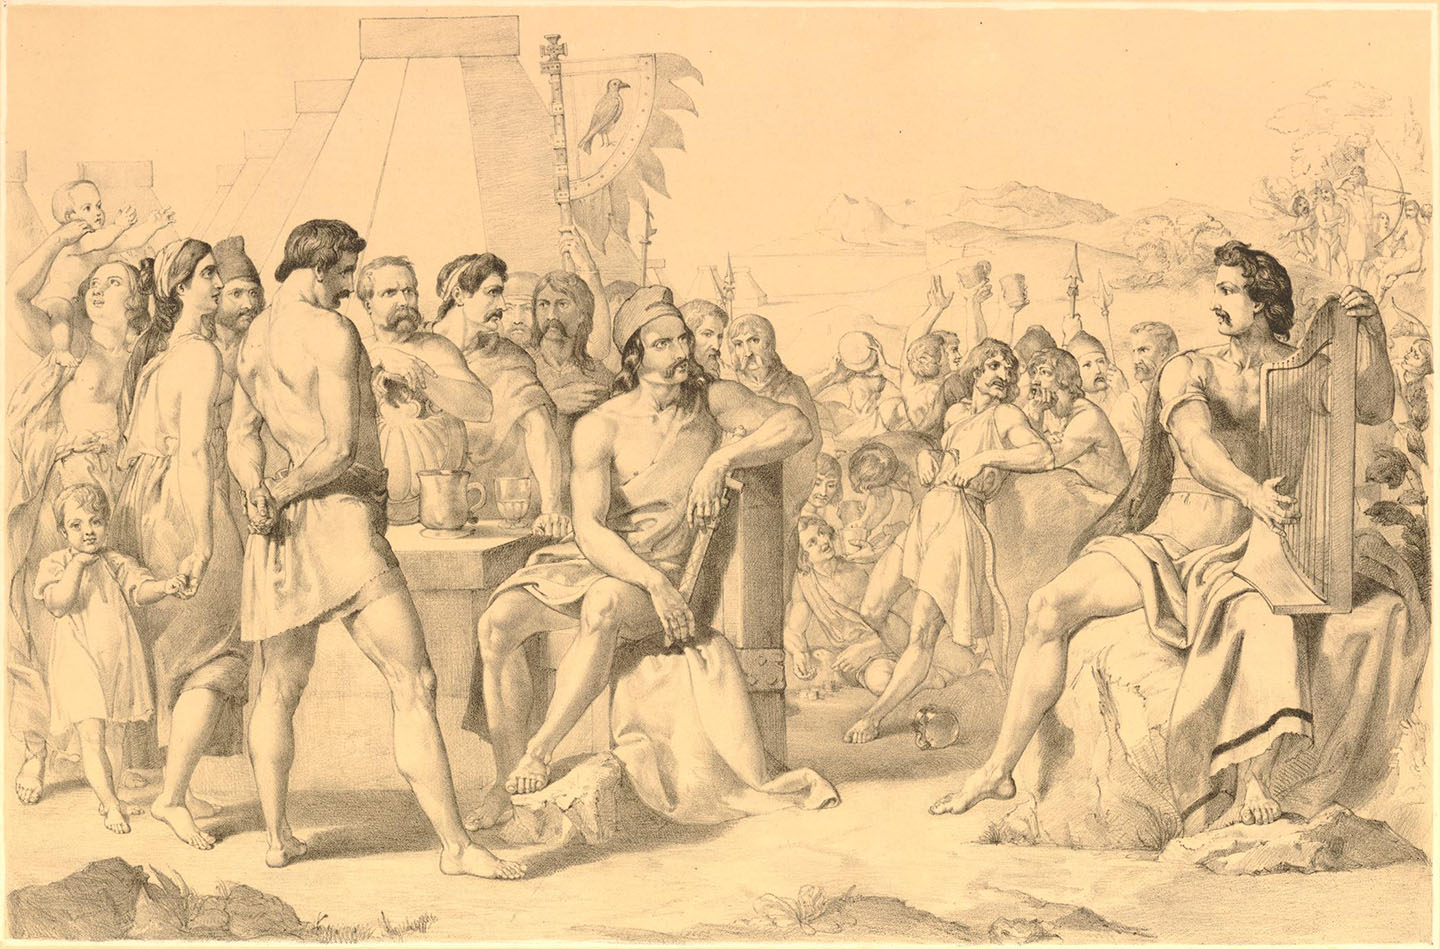 Một bản in “Vua Alfred trong doanh trại của quân Đan Mạch” sao chép theo tác phẩm của họa sĩ Marshall C. Claxton, khoảng 1843-1844, tranh của họa sĩ Frank Howard. Viện bảo tàng Anh, London. (Ảnh: Tài sản công)